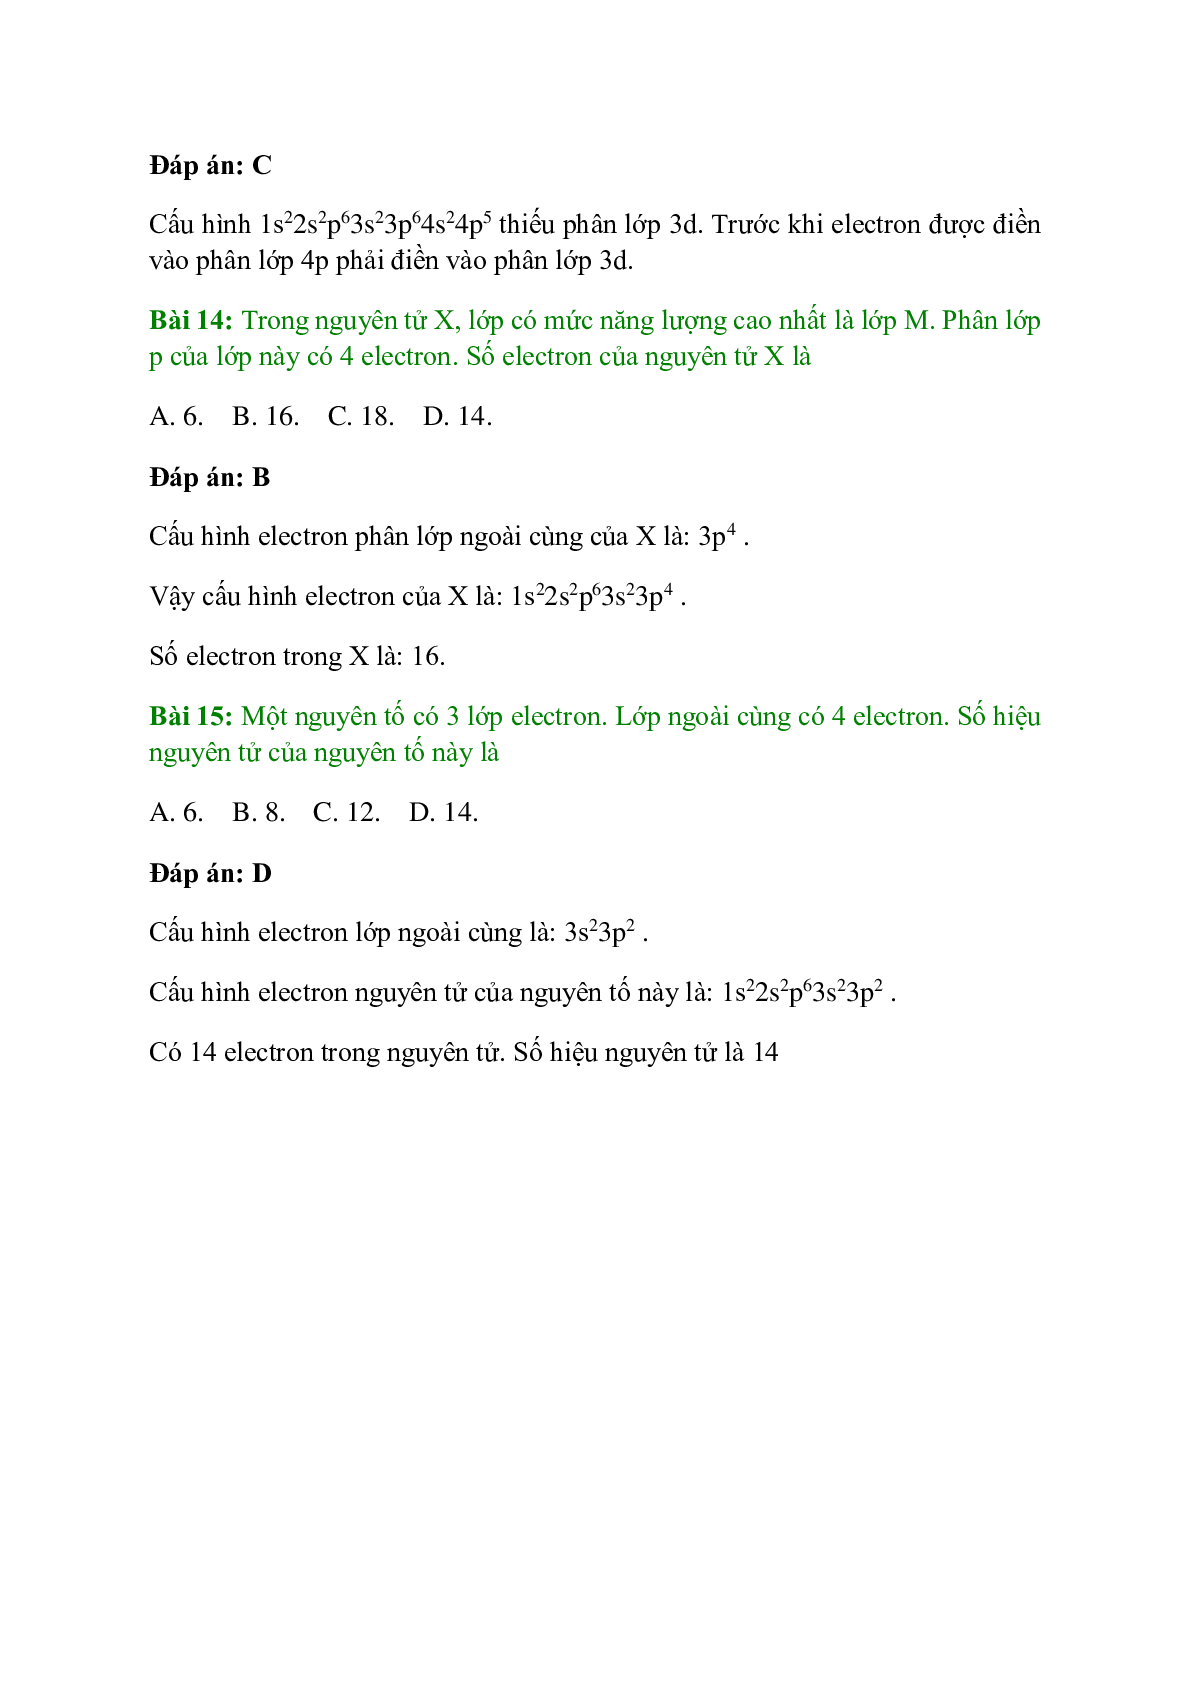 Trắc nghiệm Cấu hình electron nguyên tử có đáp án - Hóa học 10 (trang 5)